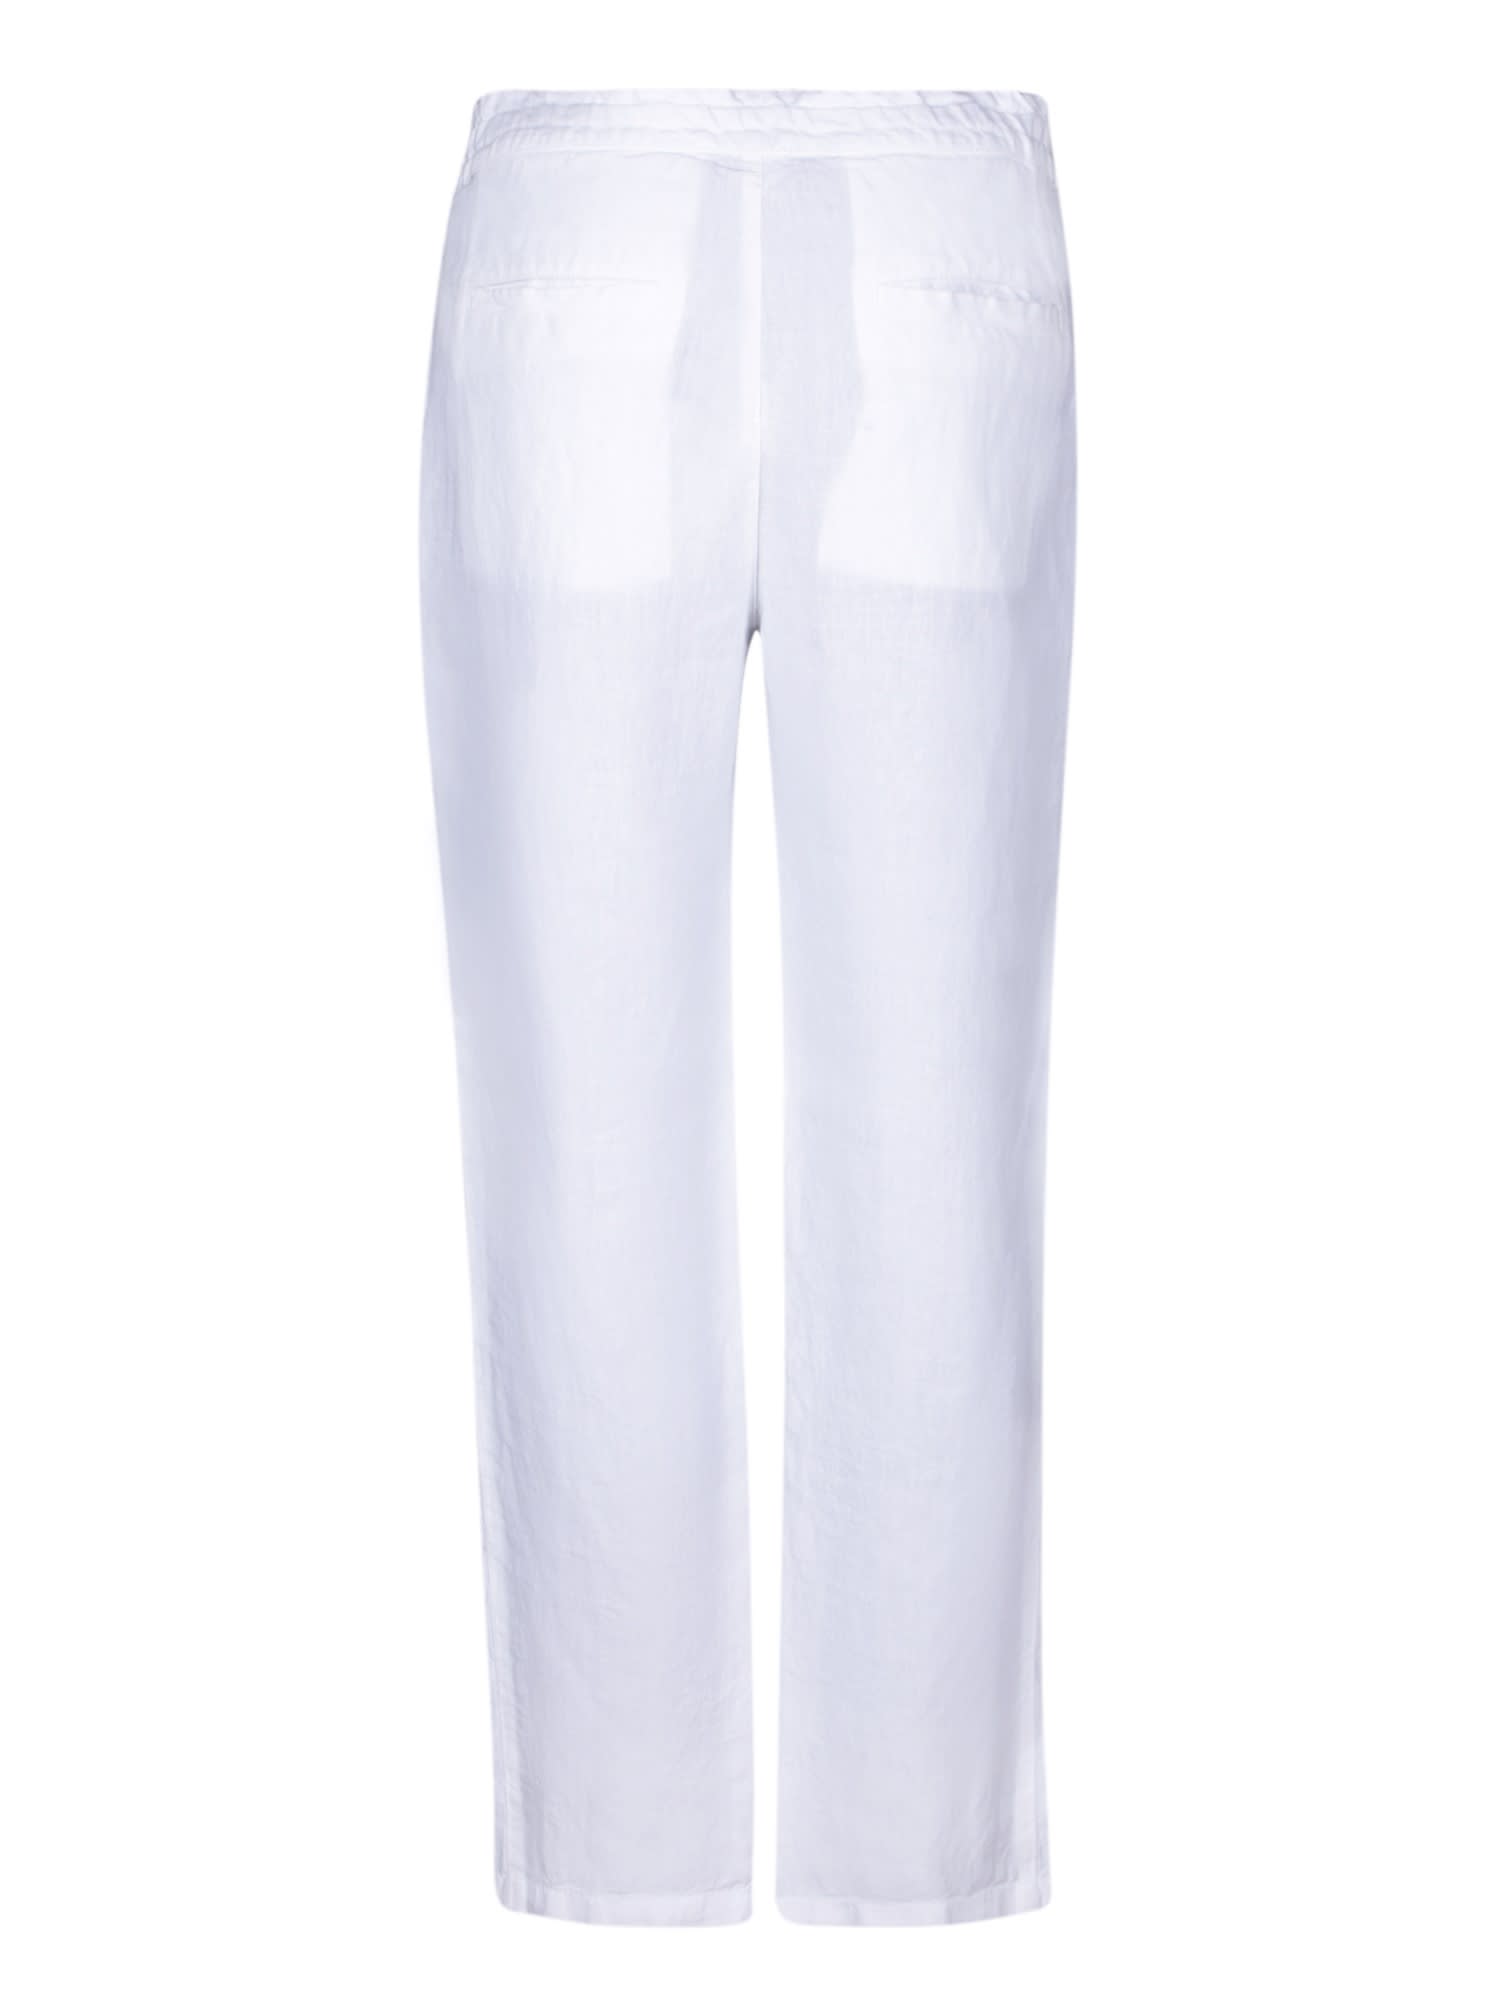 Shop 120% Lino White Linen Drawstring Trousers